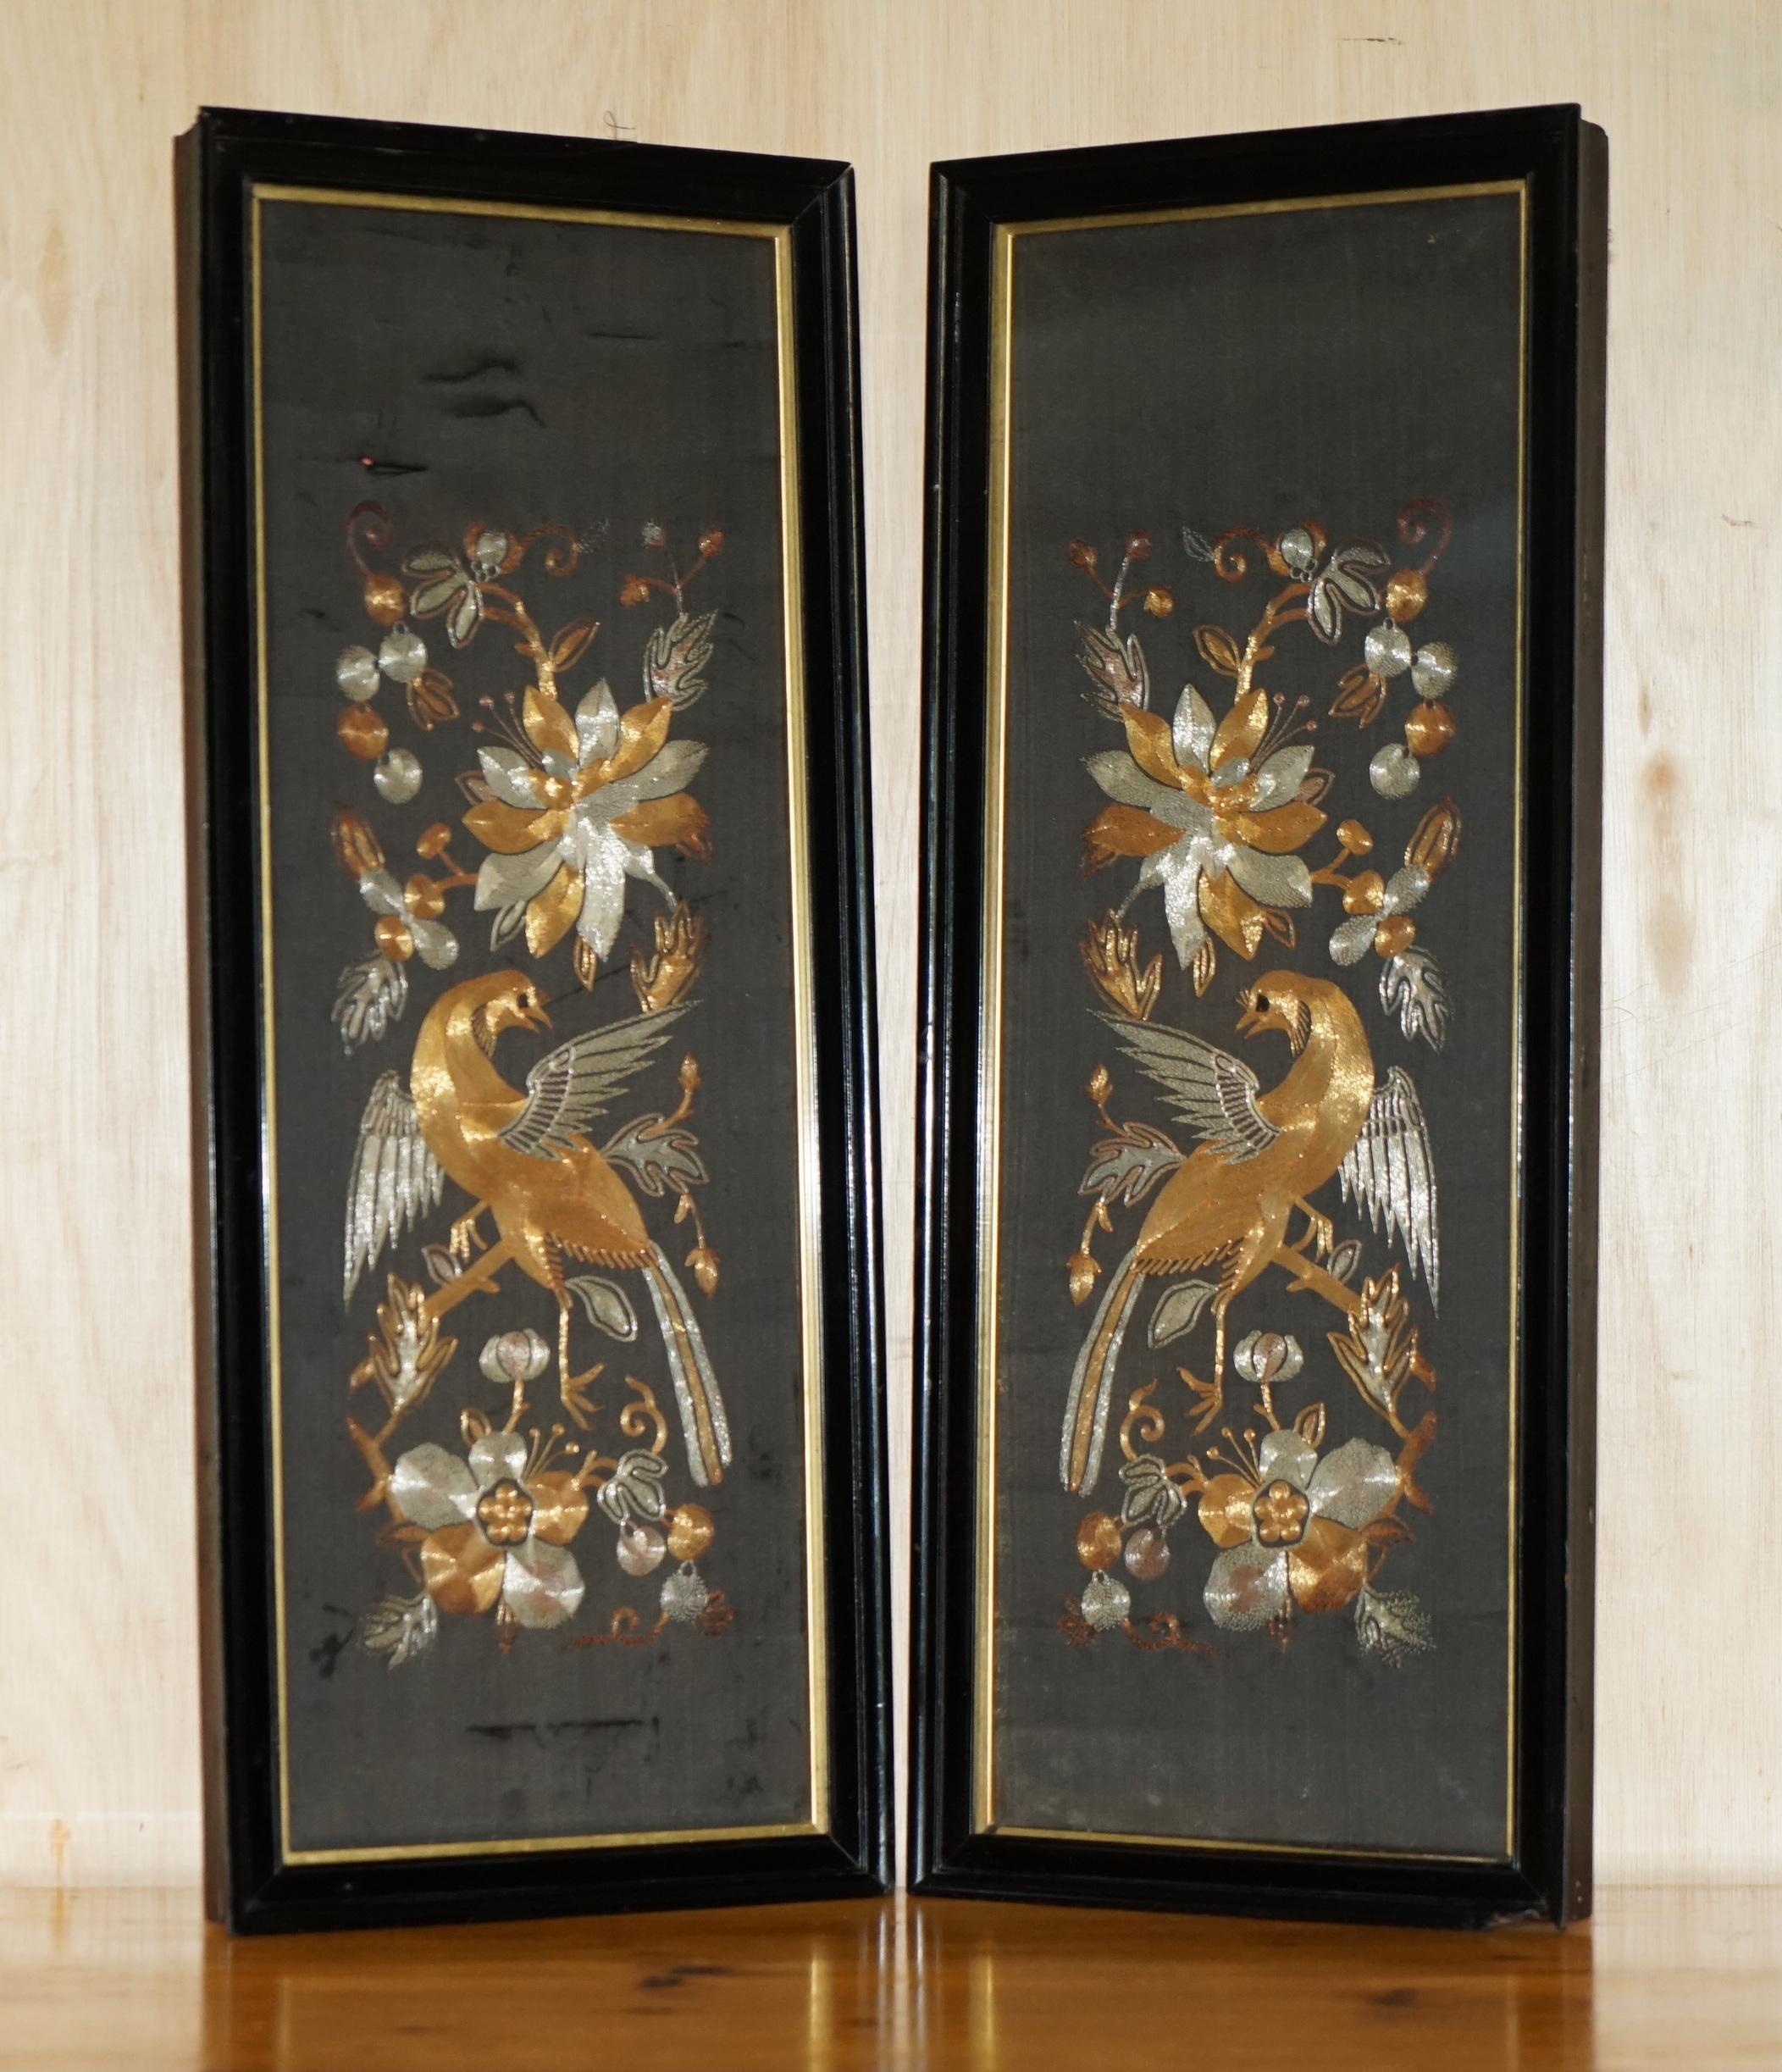 Royal House Antiques

Royal House Antiques freut sich, dieses atemberaubende Paar originaler chinesischer Wandteppiche mit Gold- und Silberfäden auf Seide aus der Zeit um 1880 zum Verkauf anbieten zu können, die chinesische Vögel in floraler